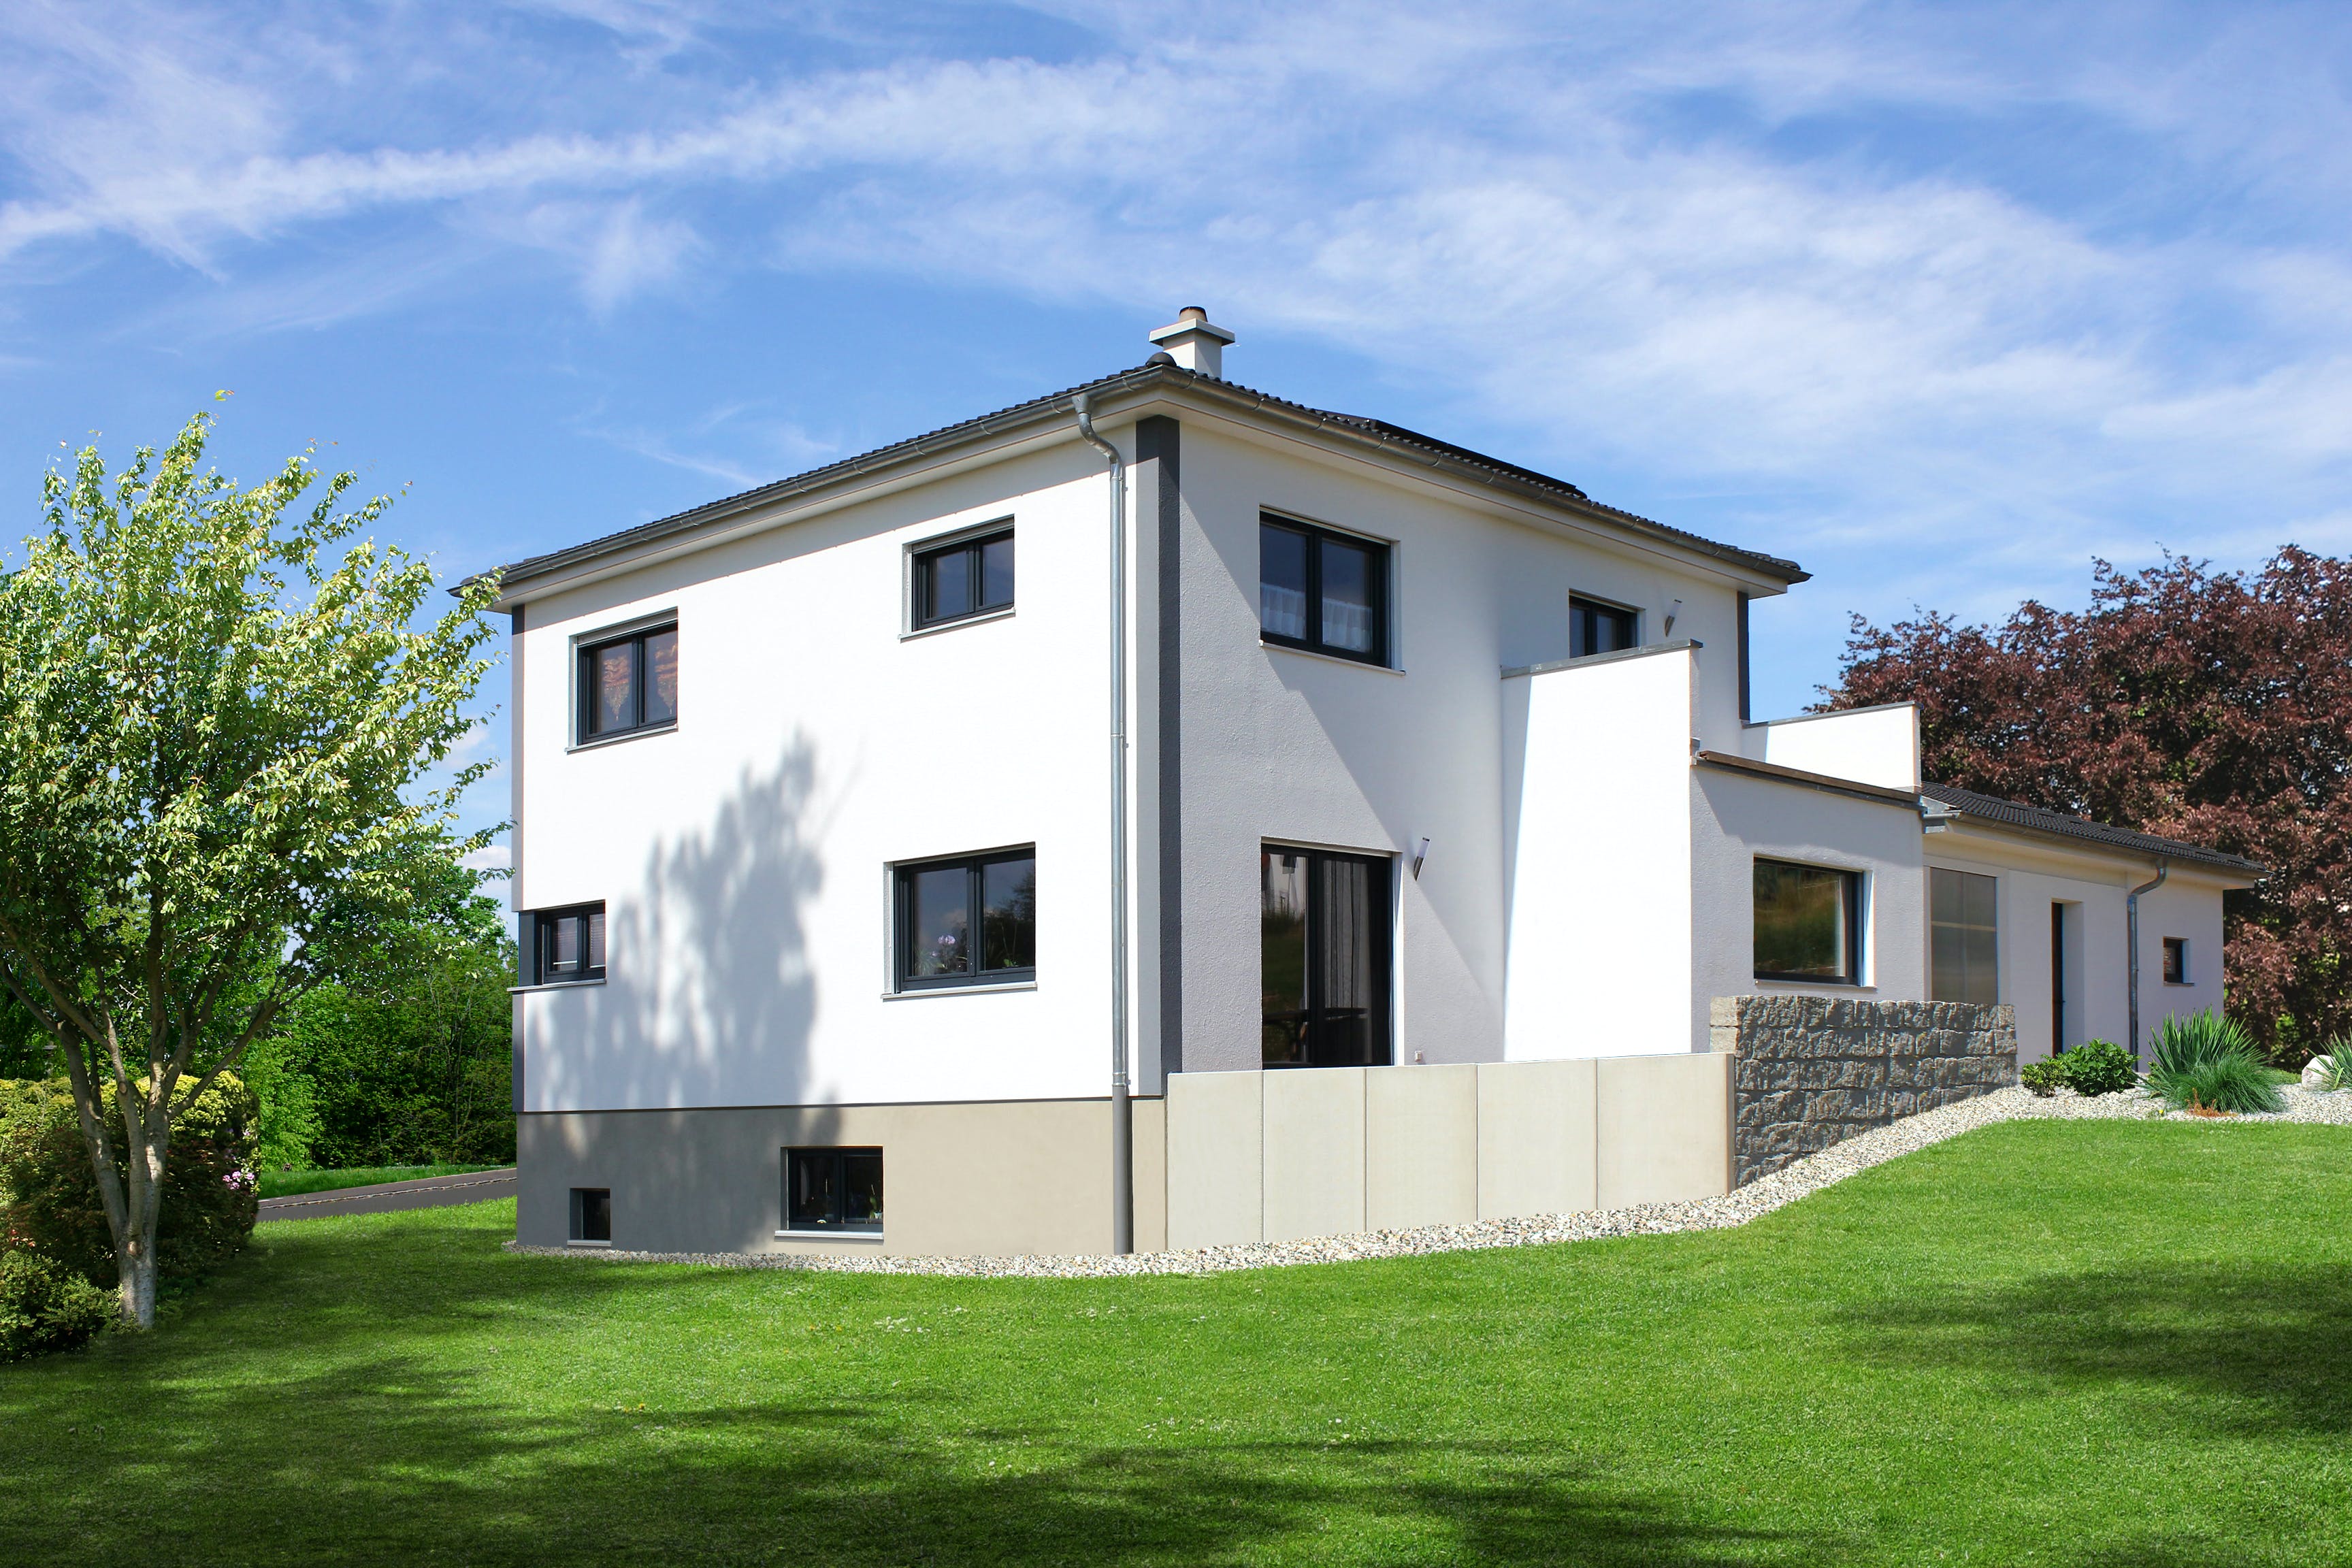 Fertighaus Homestory 215 von Lehner Haus Schlüsselfertig ab 360100€, Stadtvilla Außenansicht 2